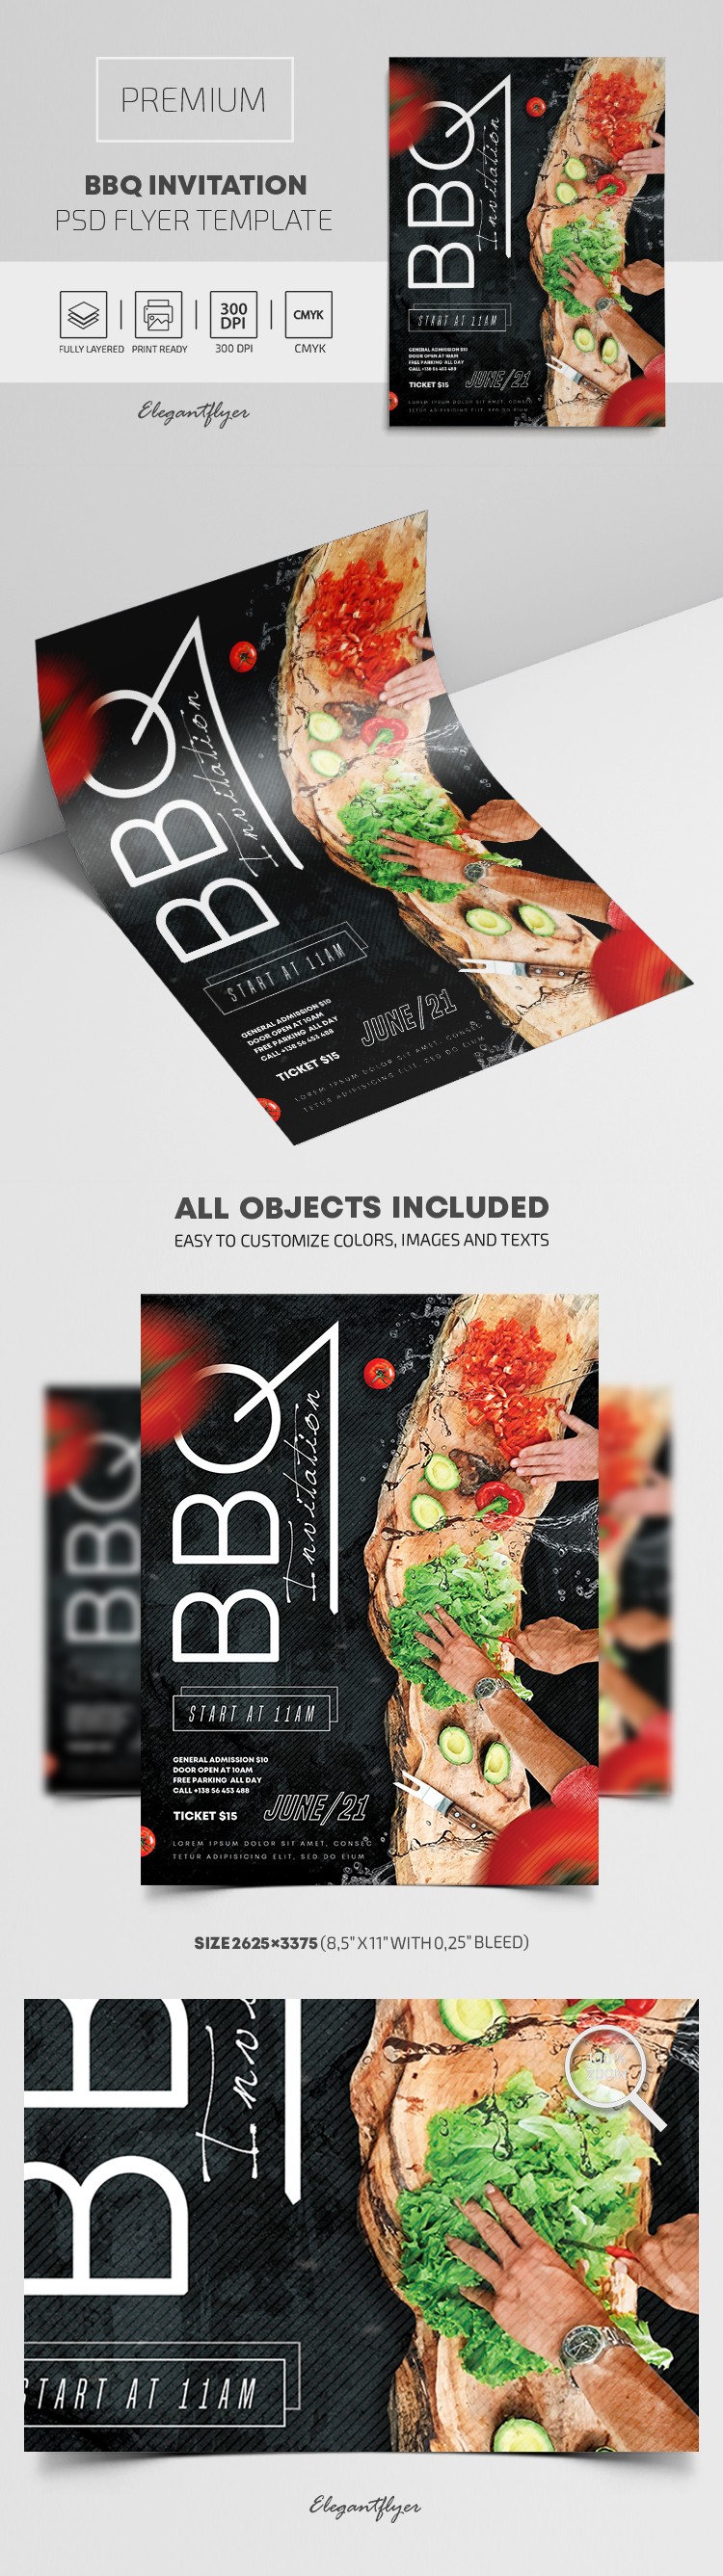 BBQ Invitation Flyer by ElegantFlyer